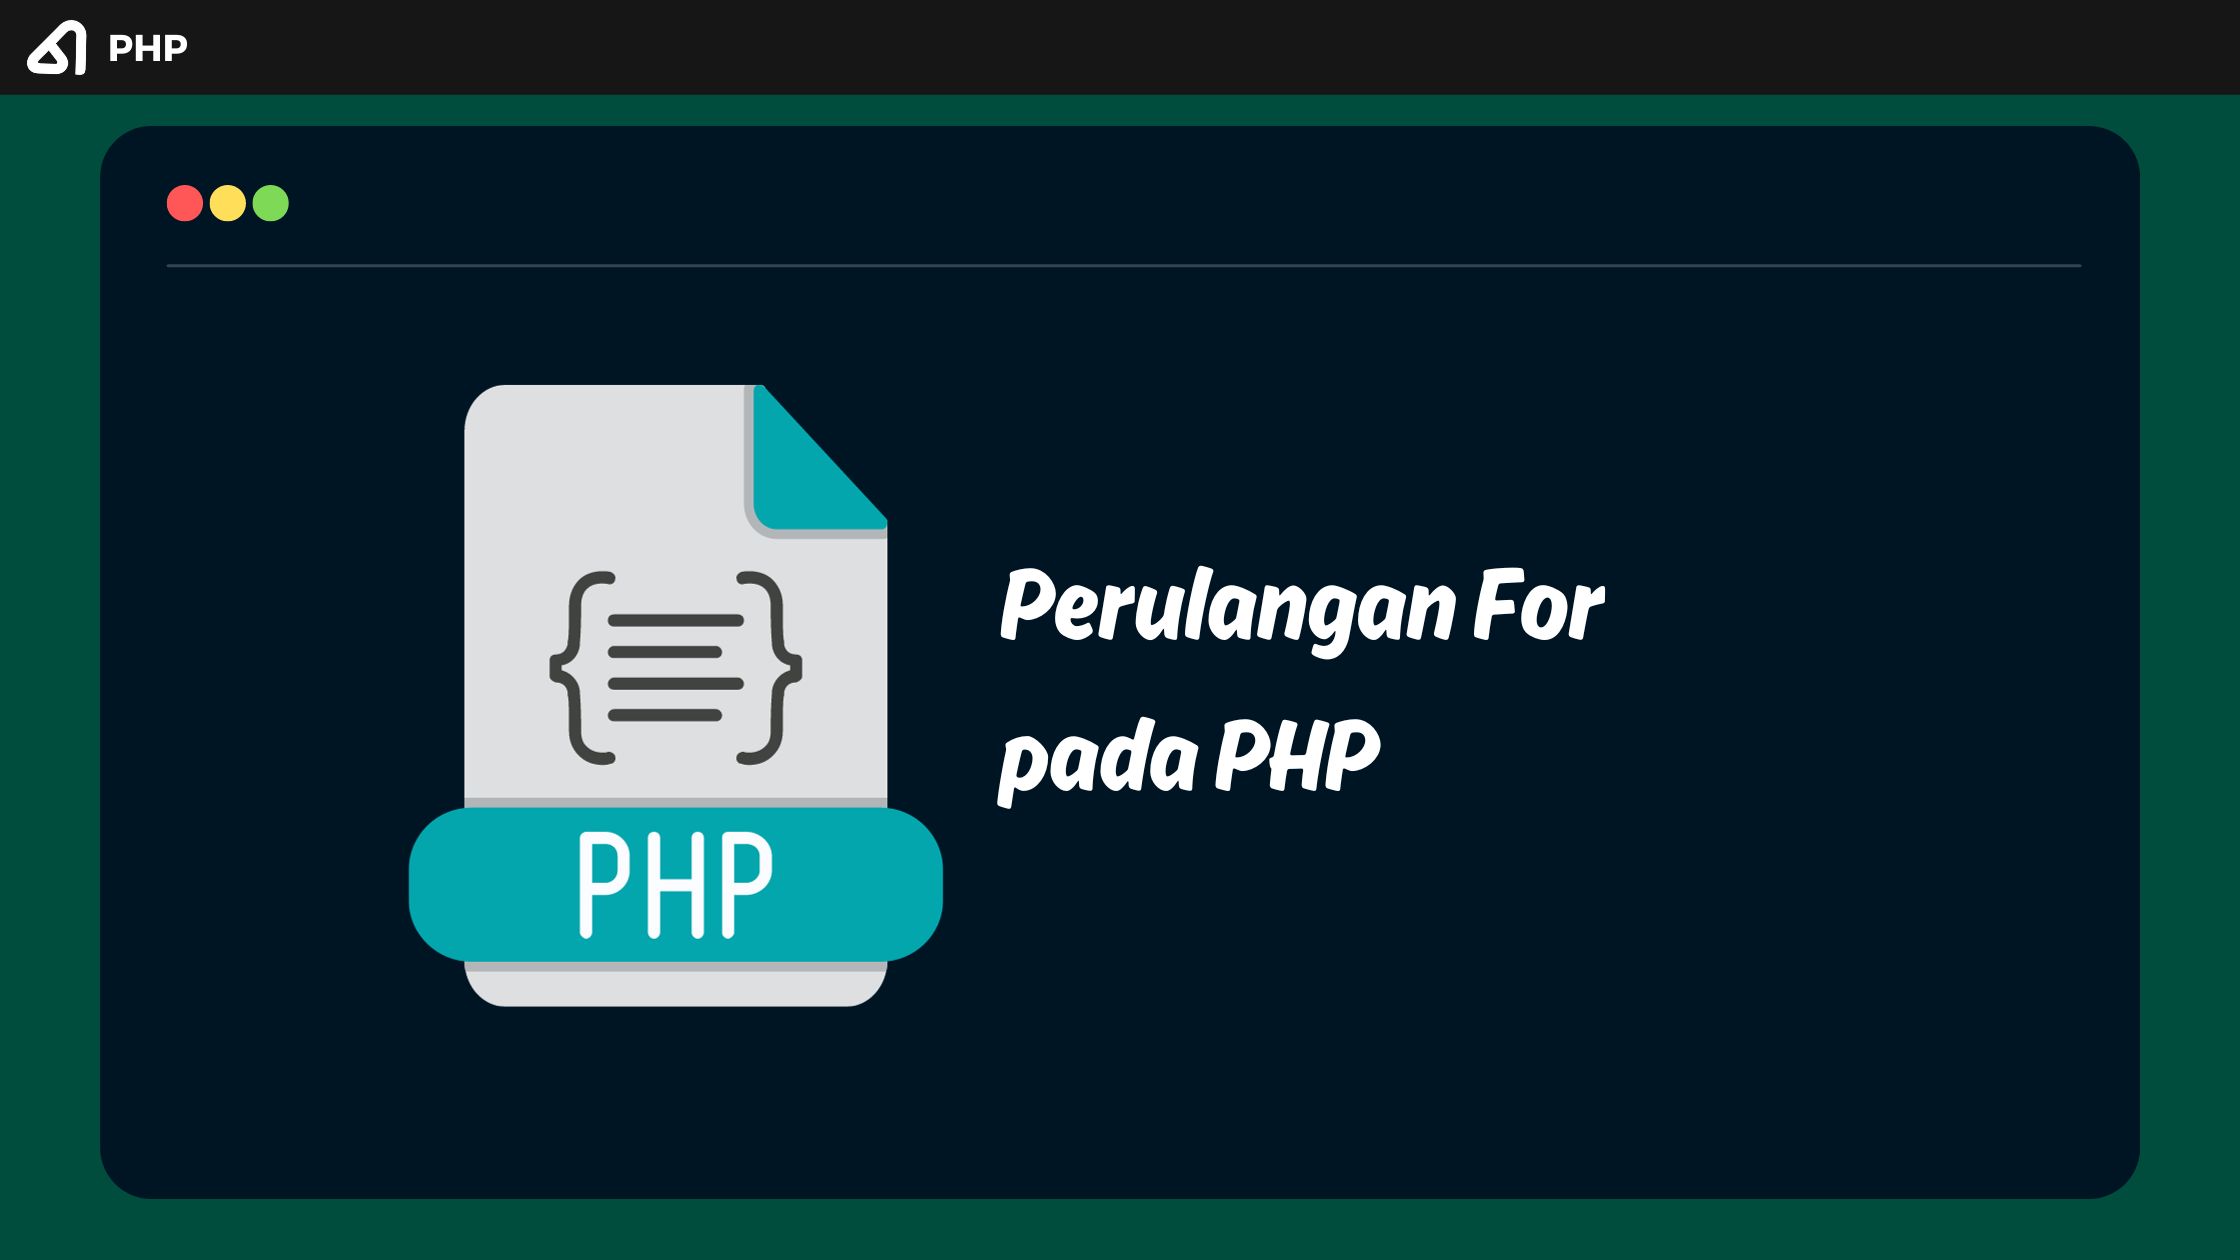 Perulangan For pada PHP